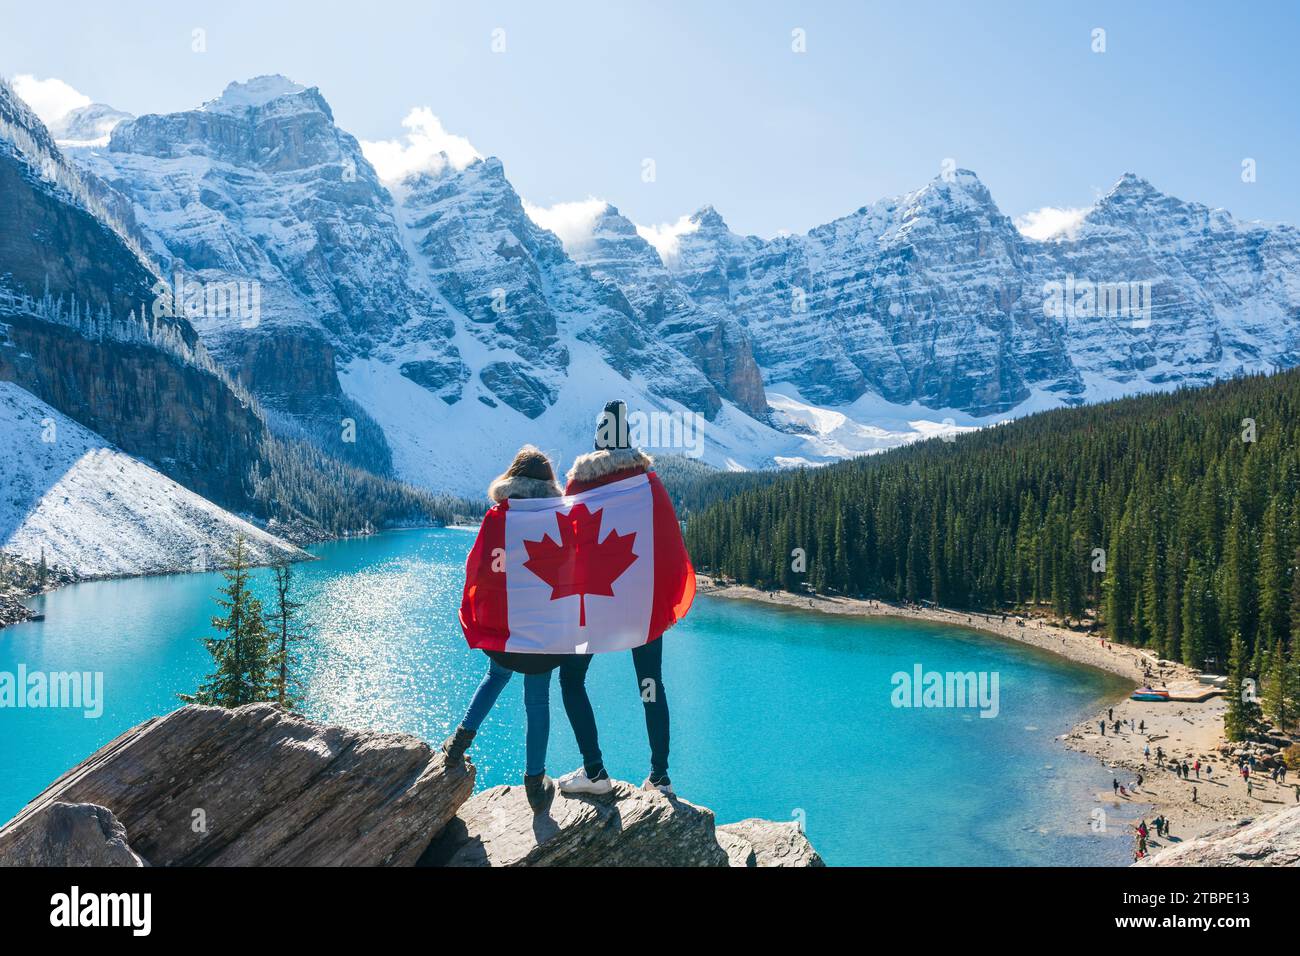 Touristen, die in kanadischer Flagge gehüllt sind und eine wunderschöne Landschaft des Moraine Sees sehen. Banff National Park. Kanadische Rockies. Alberta, Kanada. Stockfoto